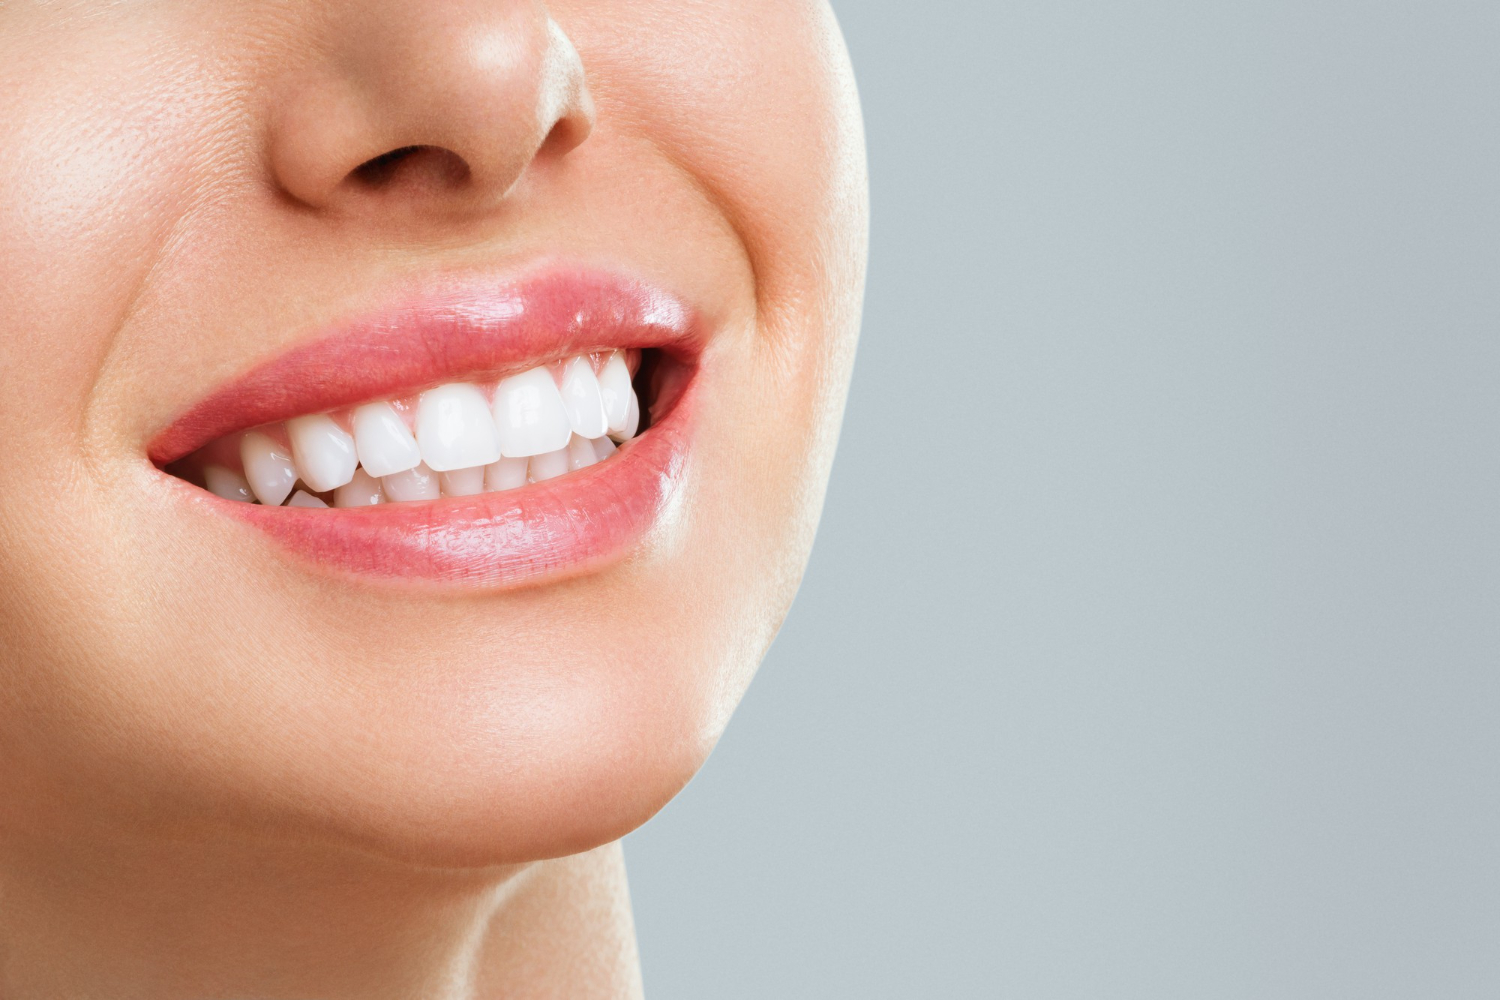 Amedent - Clínica Dental en Valencia|Blanqueamiento Dental: La sonrisa que siempre soñaste